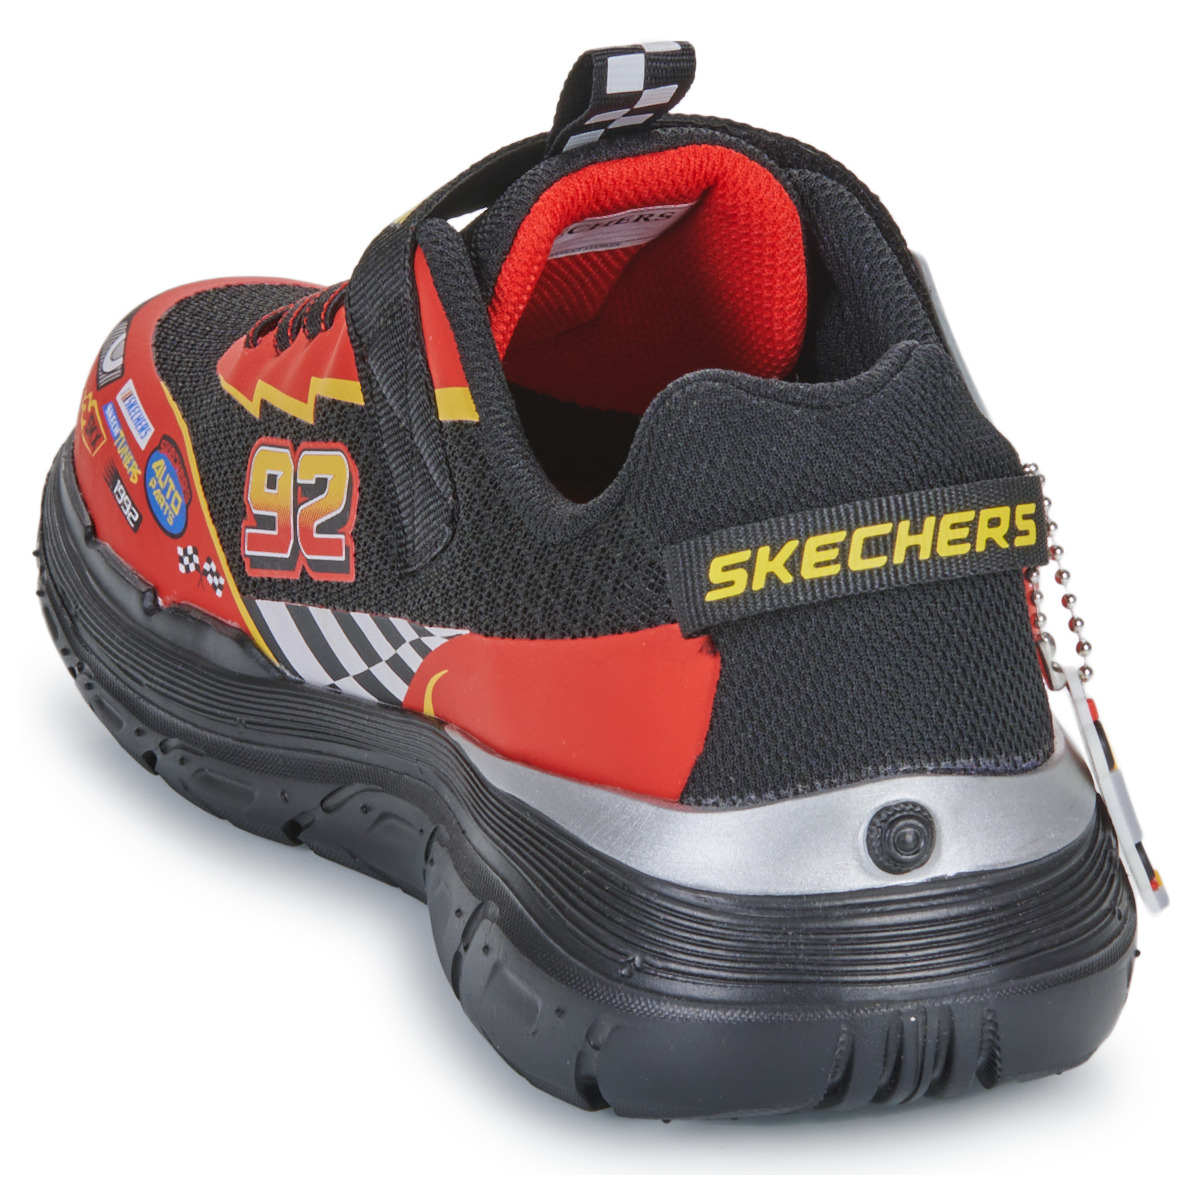 Skechers Rouge / Noir SKECH TRACKS - CLASSIC v93MprF9